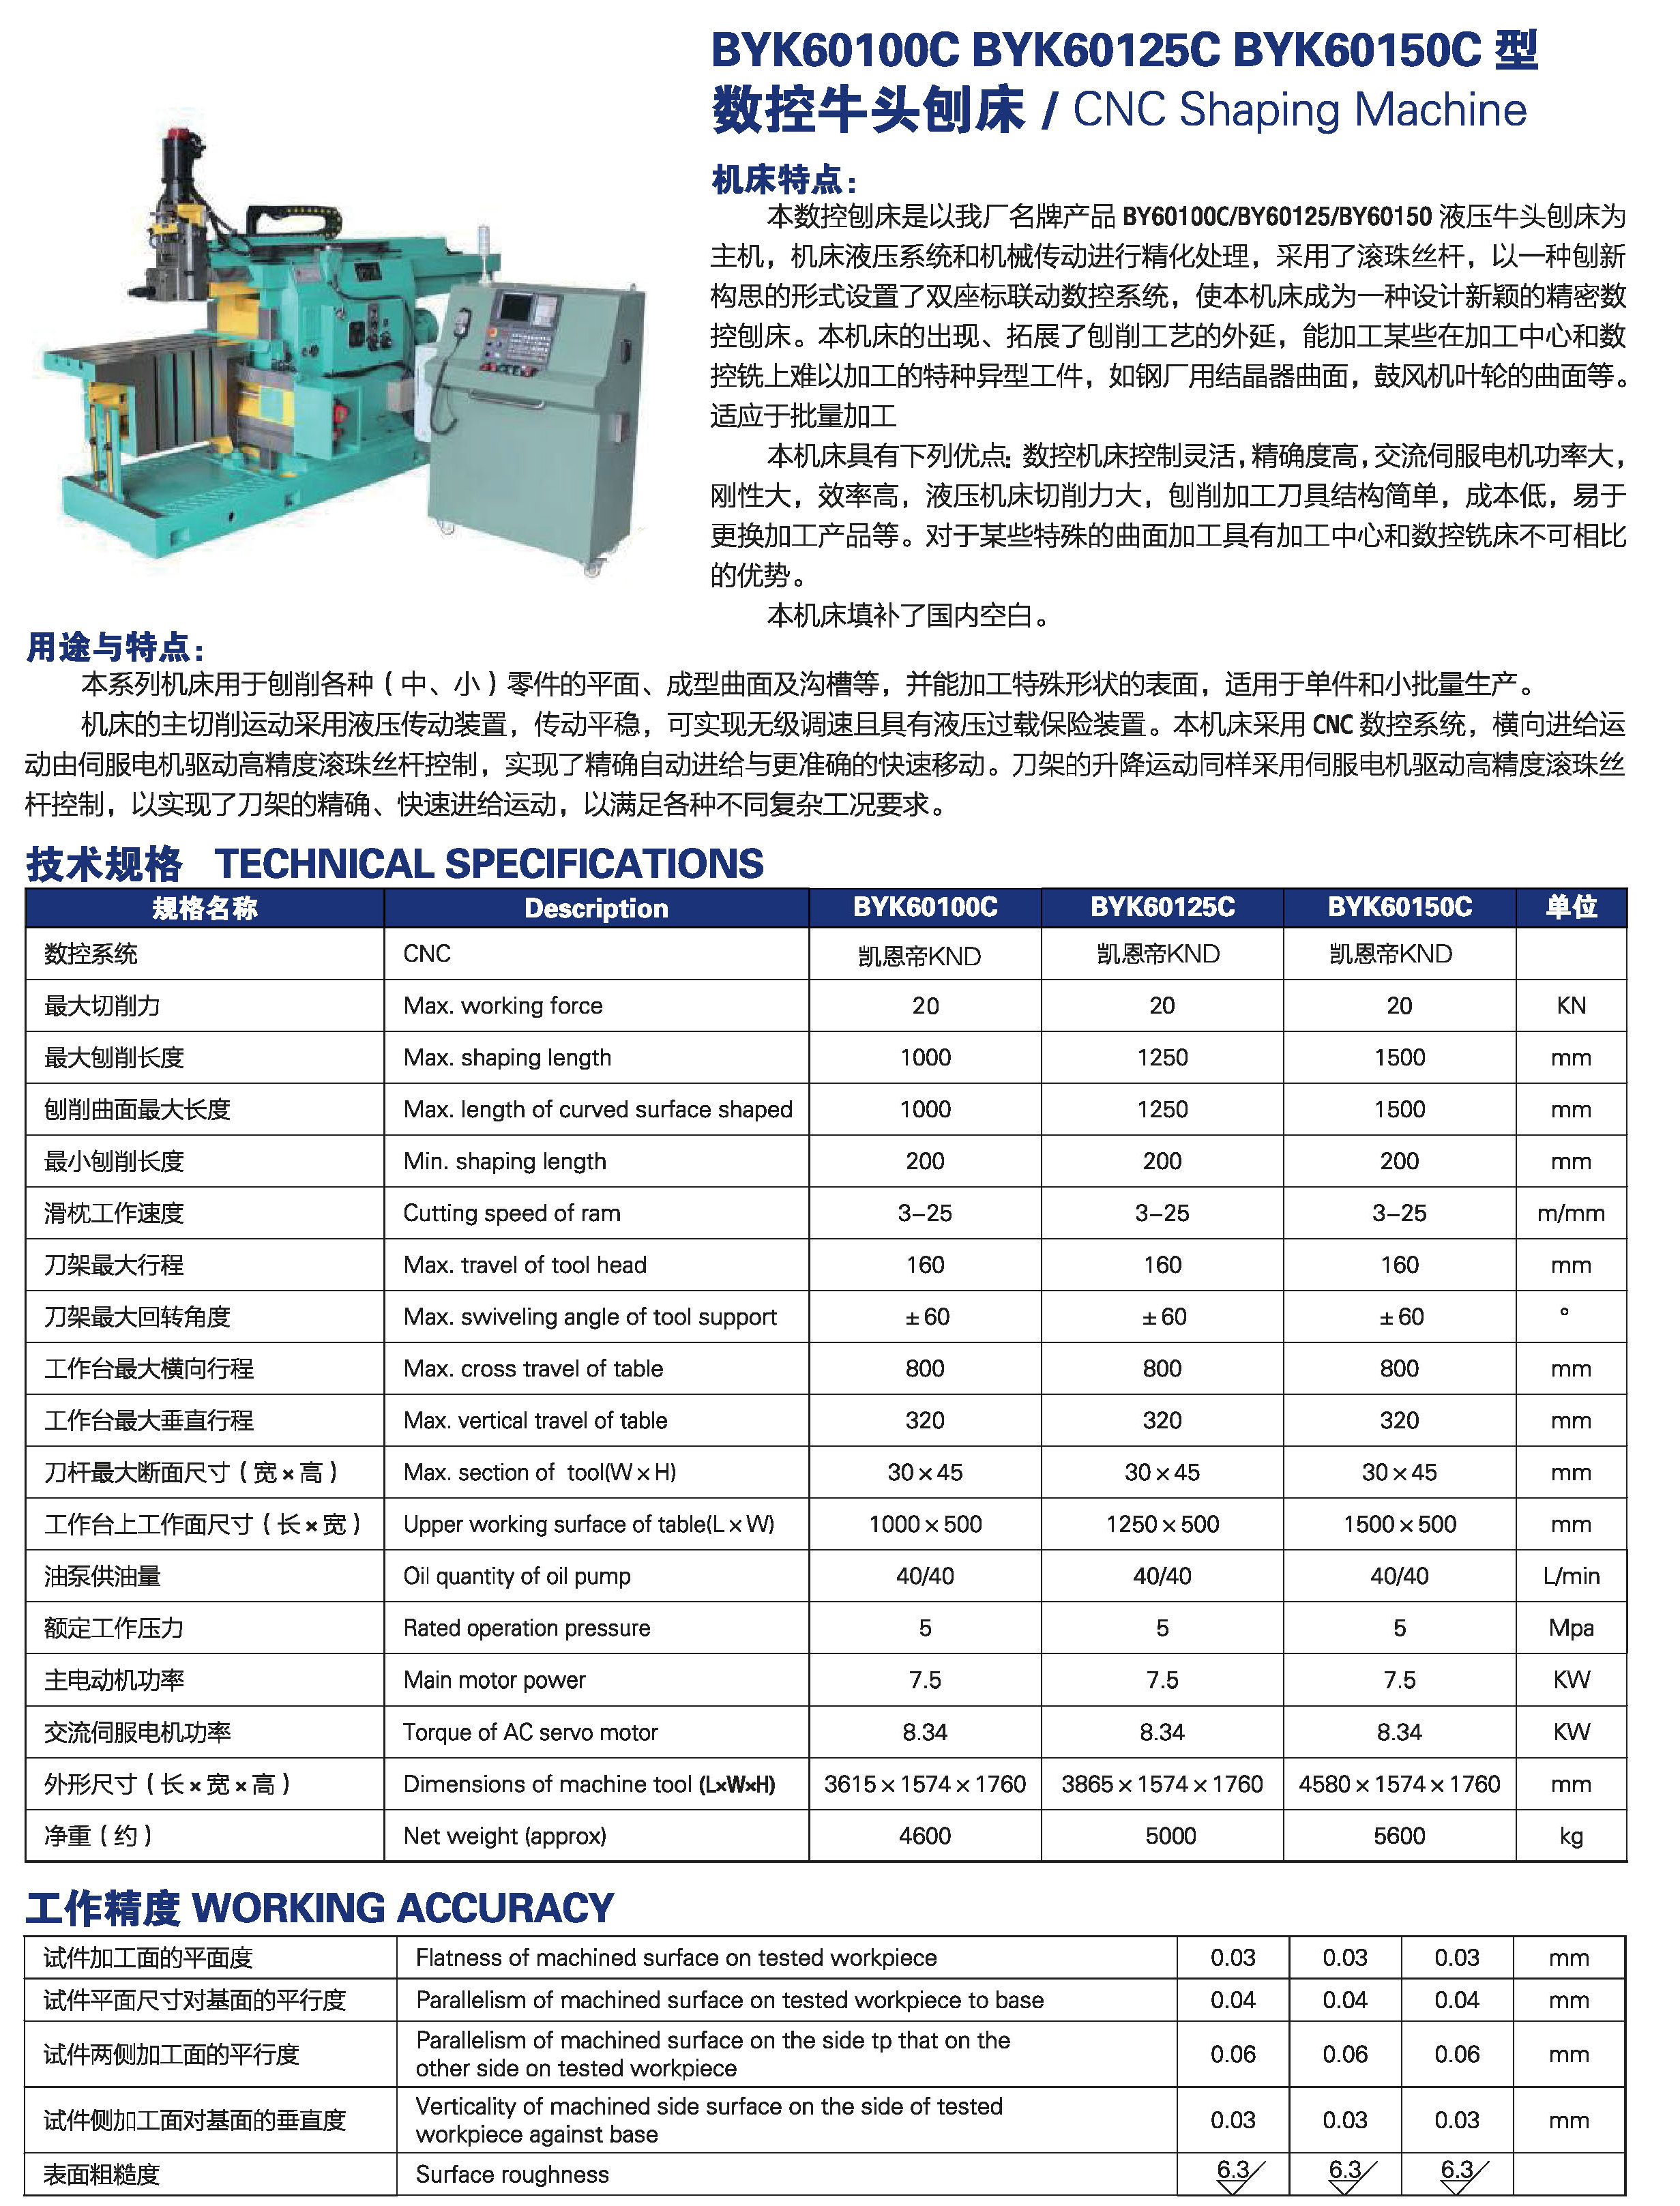 CNC SHAPING MACHINE BYK60100C-BYK60125C-BYK60150C